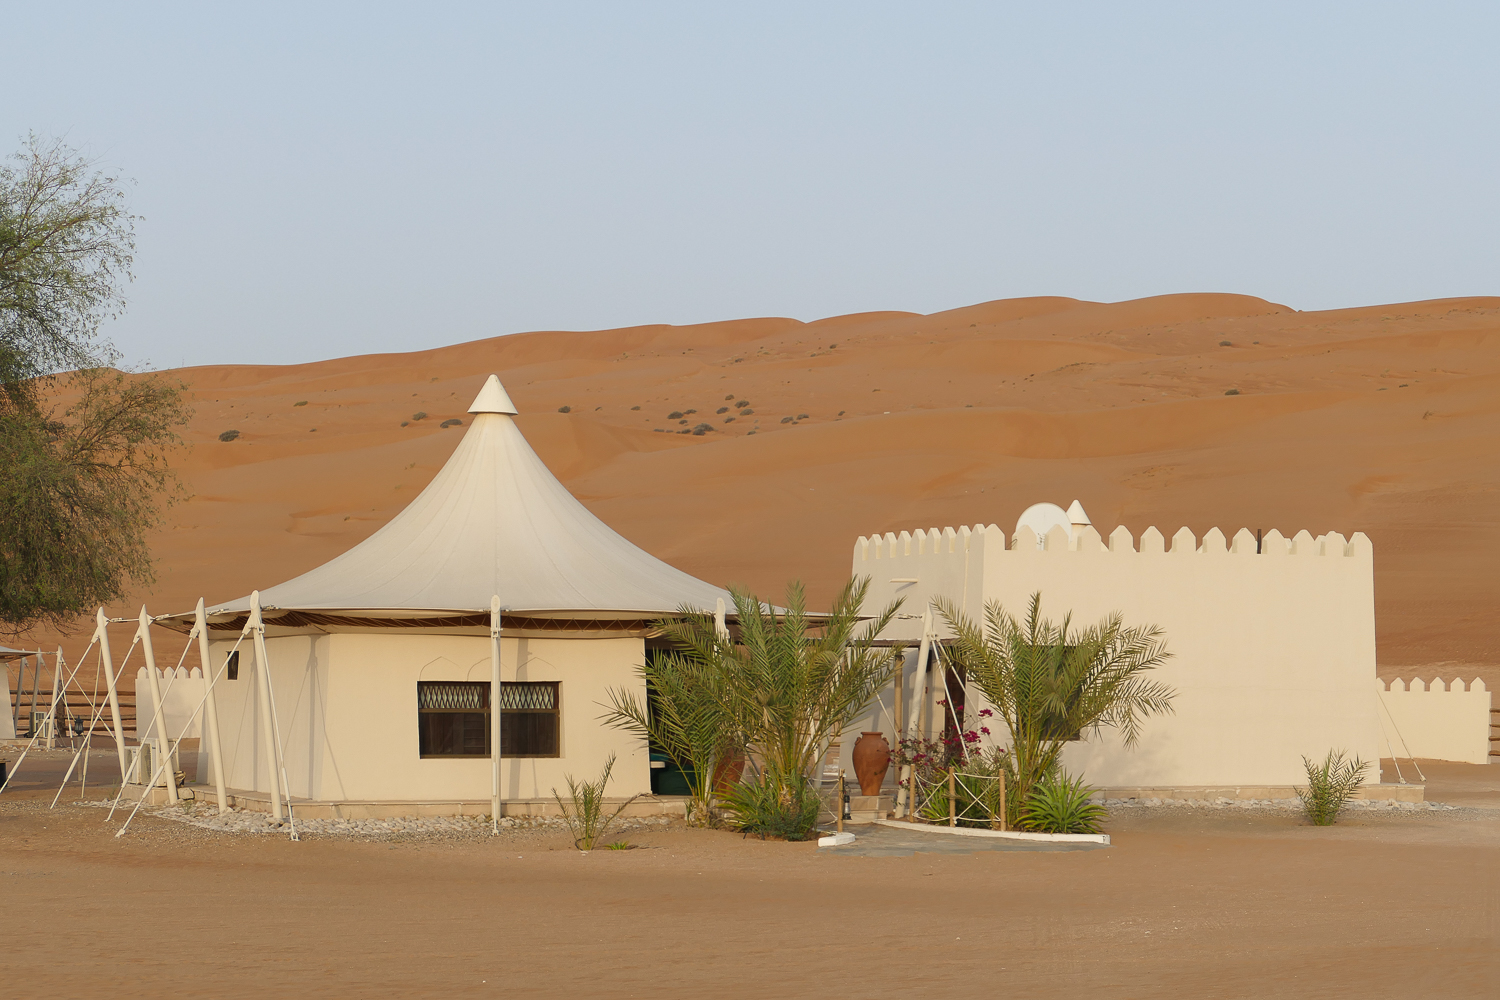 Les jolies dunes du Wahiba sands - Oman, Trésor caché